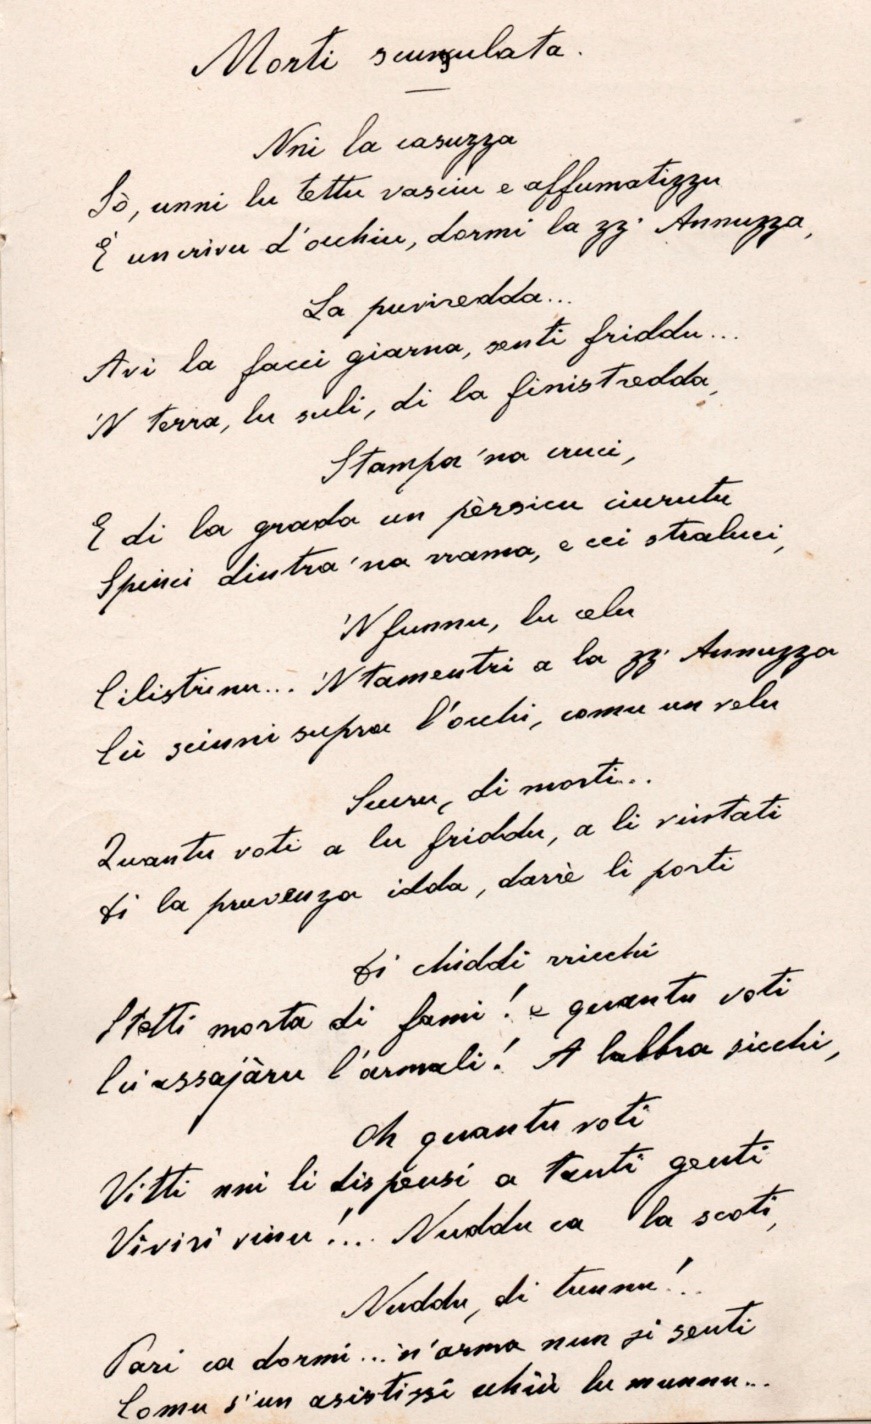 Attorno a una poesia di Alessio Di Giovanni: “Morti scunzulata” - di Vittorio Riera